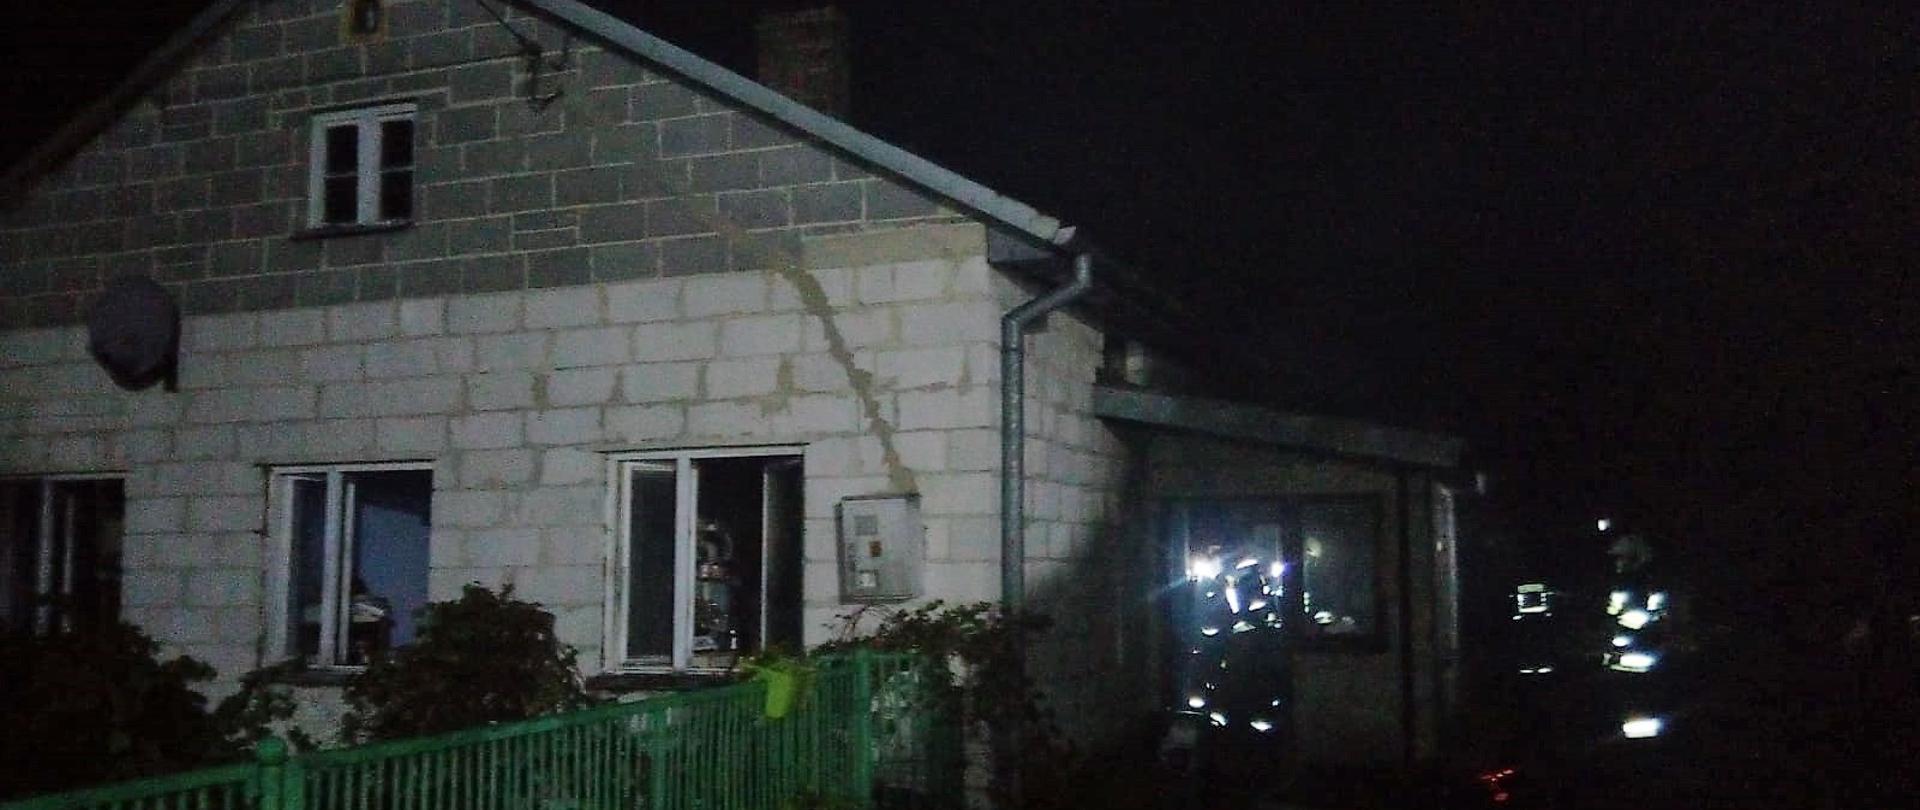 Zdjęcie przedstawia budynek jednorodzinny w którym doszło do pożaru. W ganku wejściowym widać postacie strażaków oraz węże gaśnicze rozwinięte na trawie.